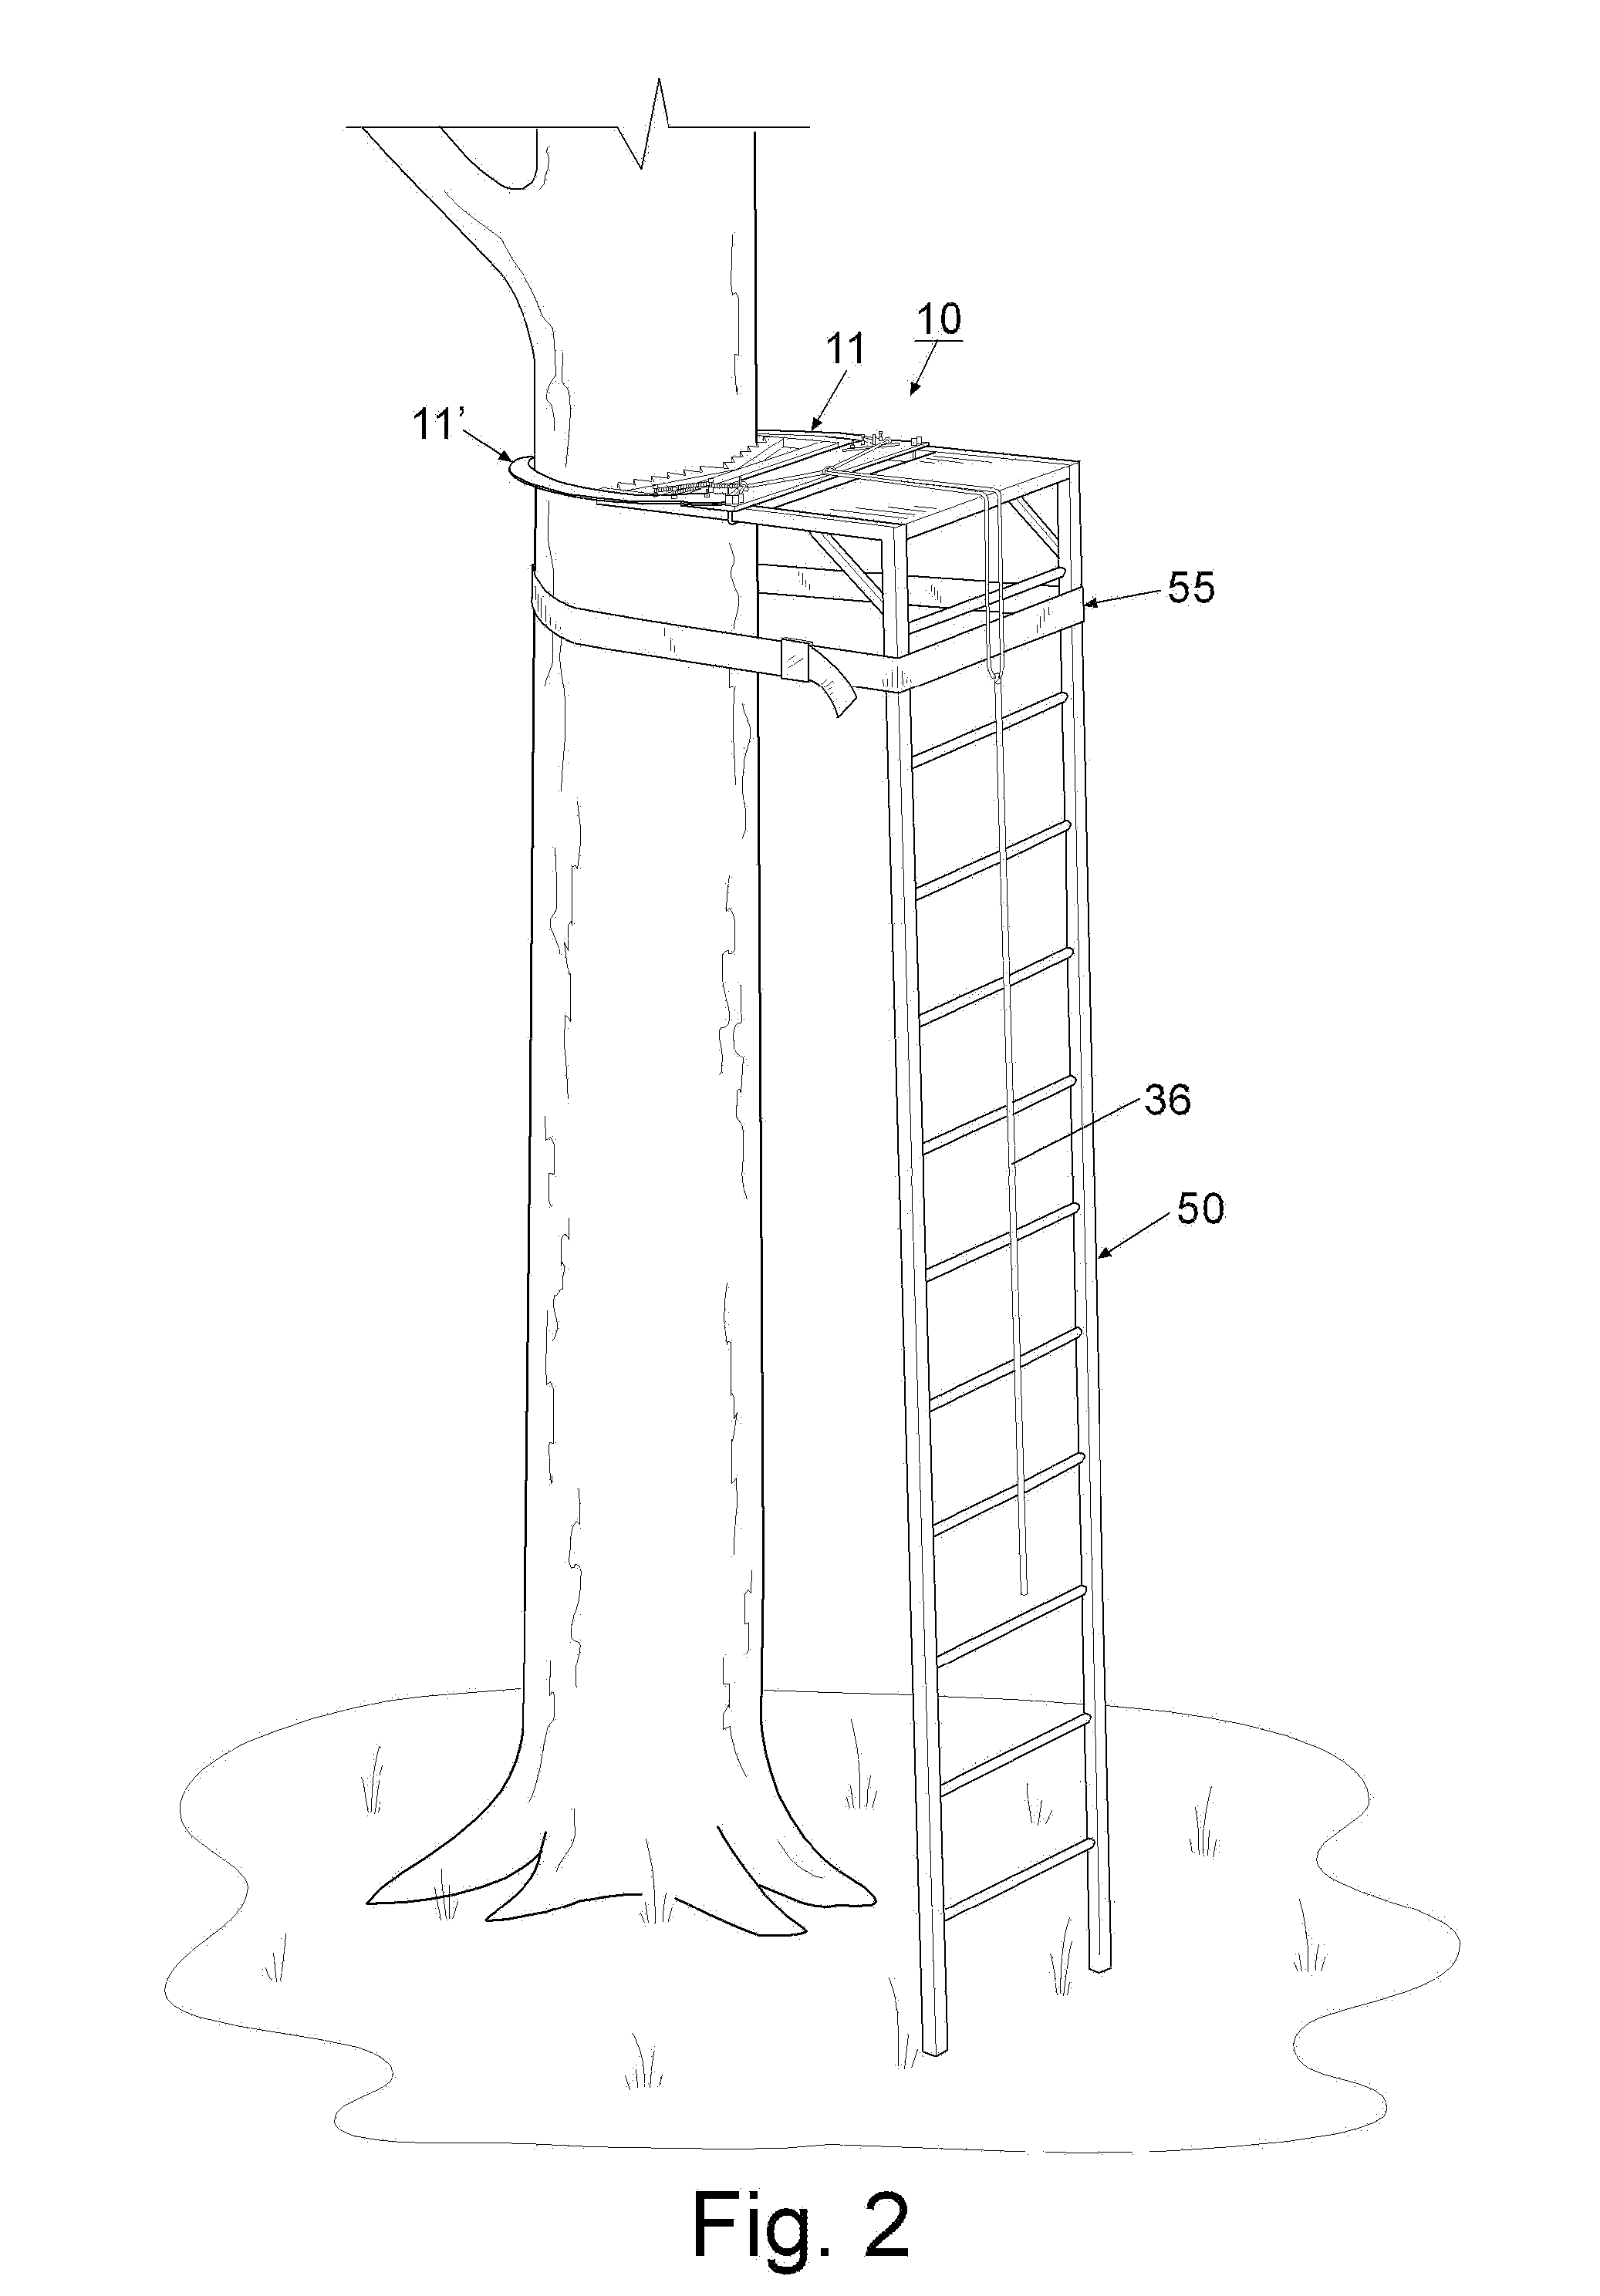 Ladder attachment